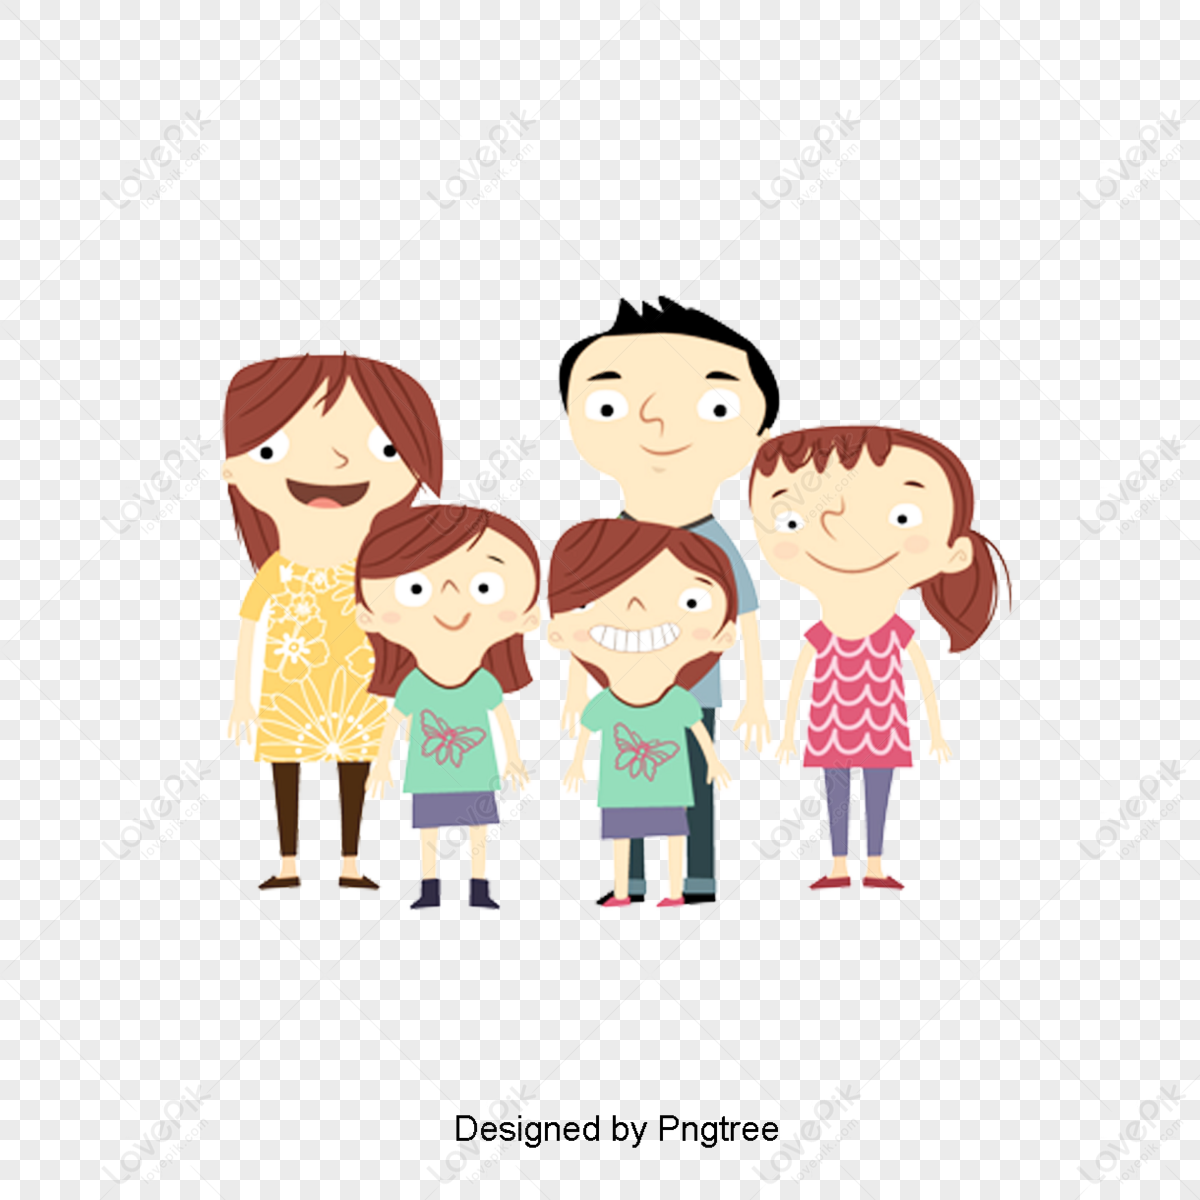 รูปภาพครอบครัวการ์ตูน, ดาวน์โหลดภาพ Png ฟรี, พื้นหลัง - Lovepik